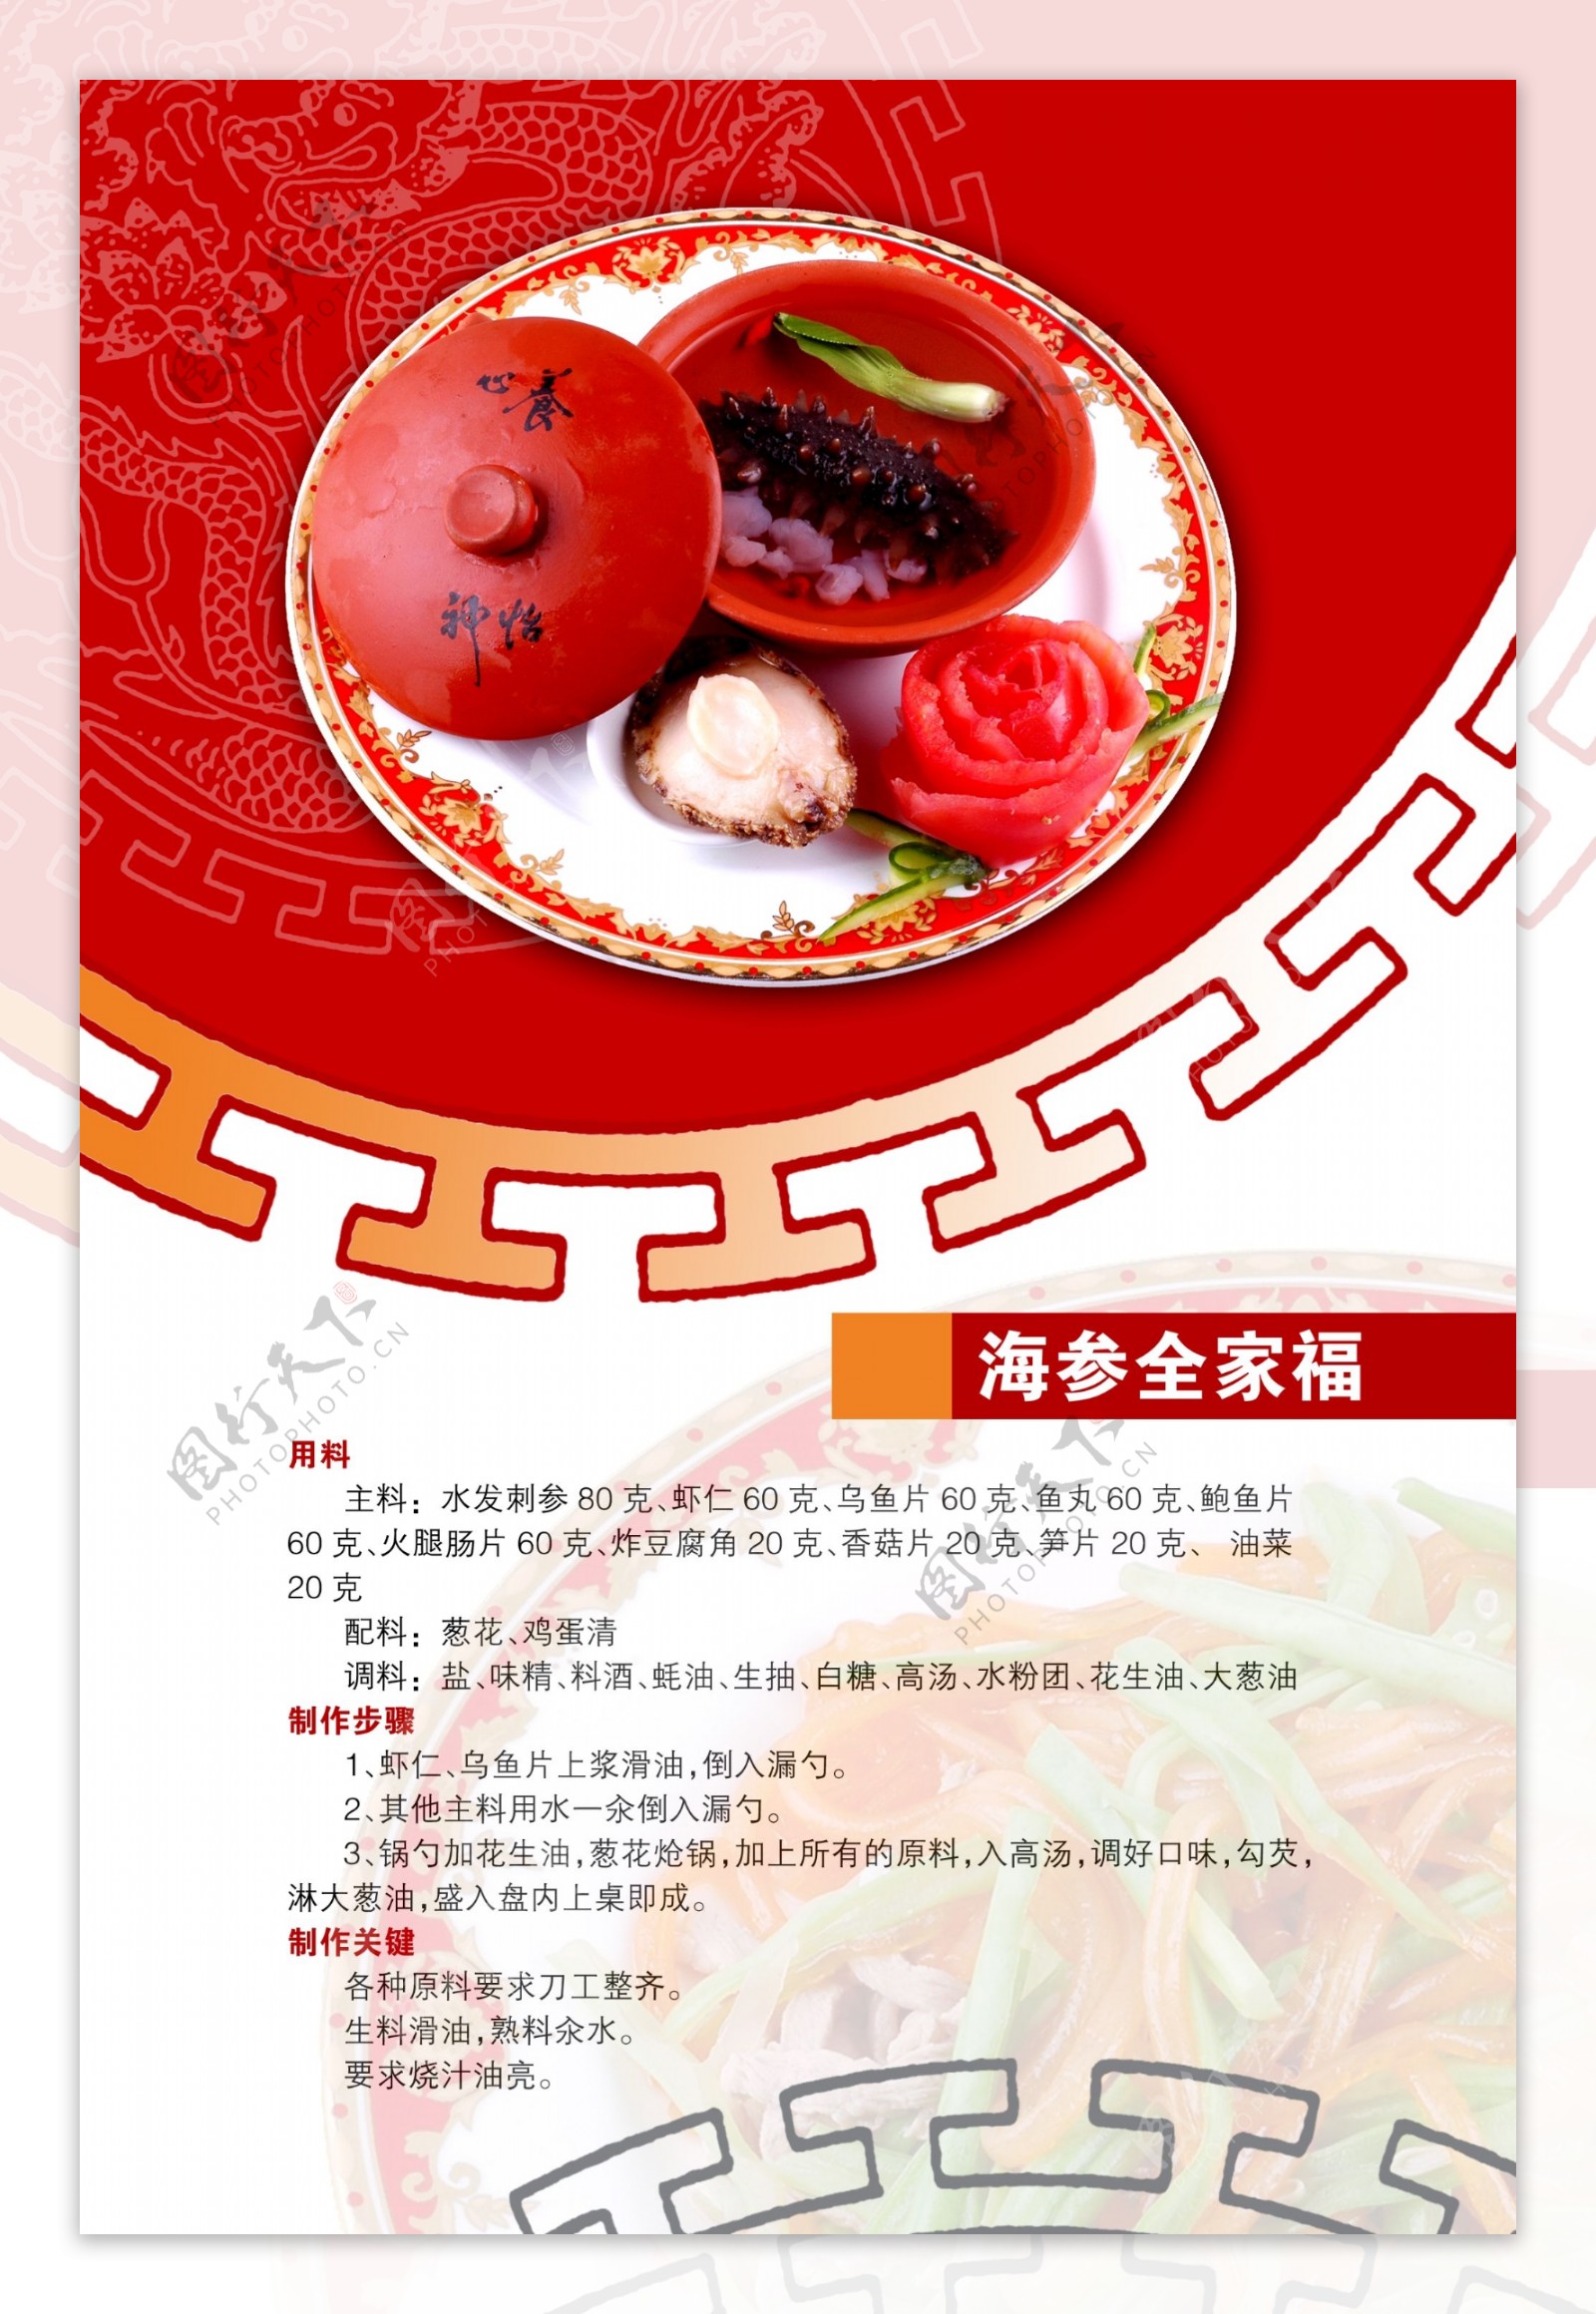 psd源文件广告设计psd素材PSD分层素材食谱菜谱ps素材酒店